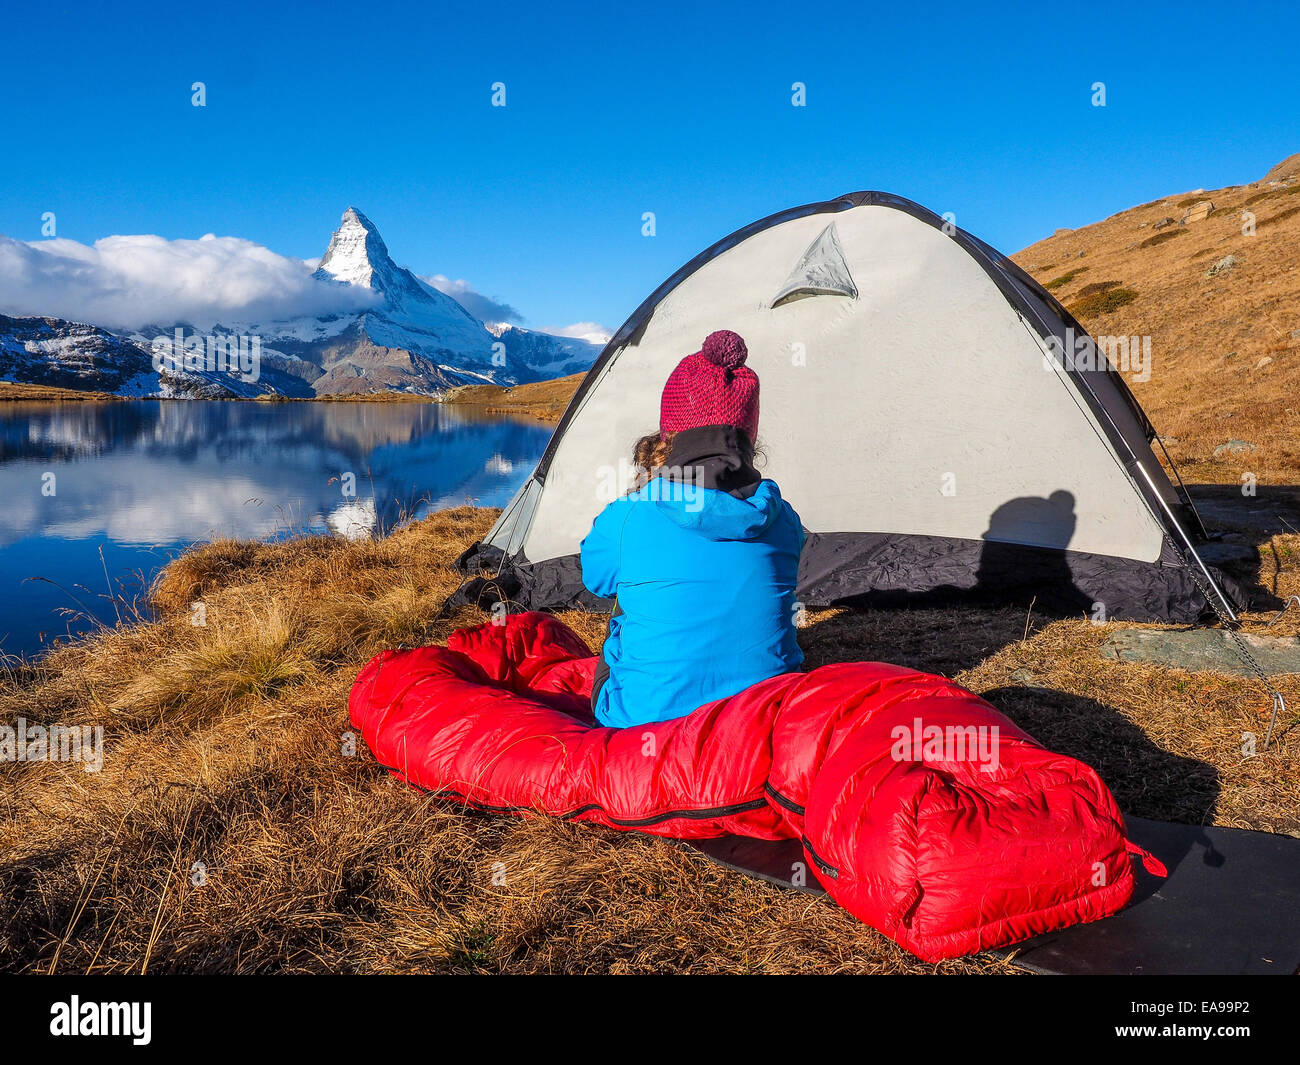 Zelt in der Nähe von Matterhorn am frühen Morgen mit Relfection in  StelliSee, Zermatt, Schweiz Stockfotografie - Alamy